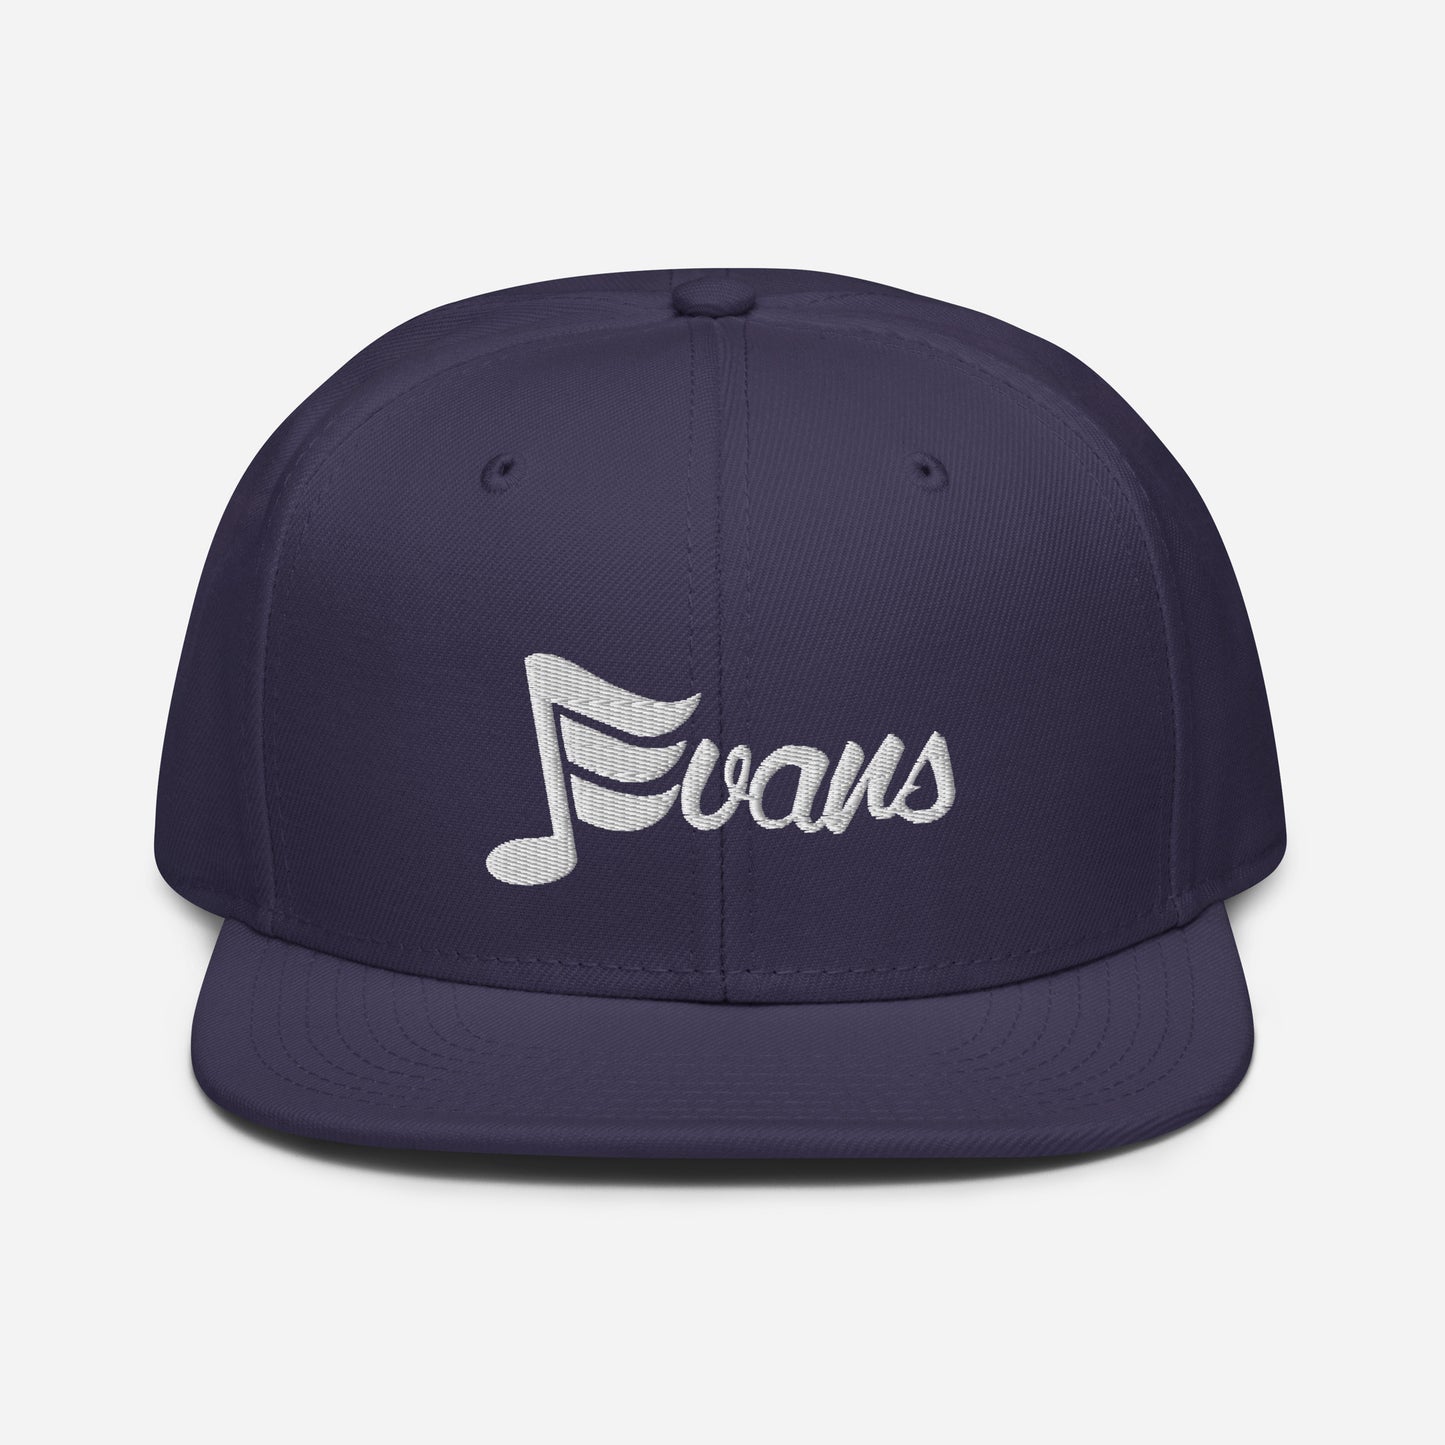 J. Evans Snapback Hat